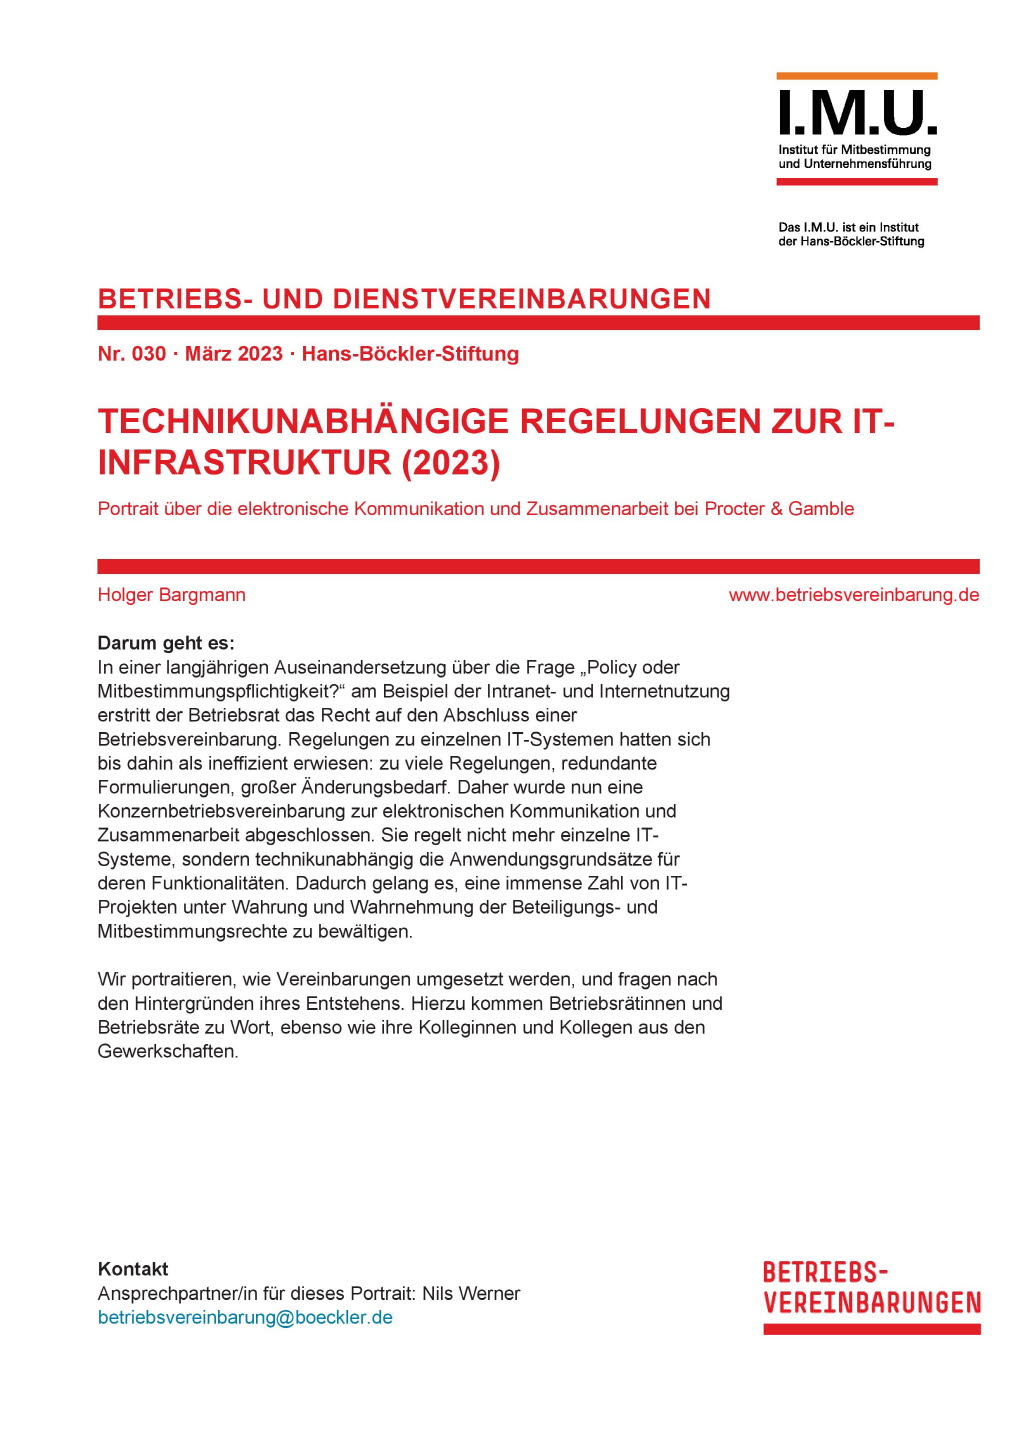 Technikunabhängige Regelungen zur IT-Infrastruktur (2023)